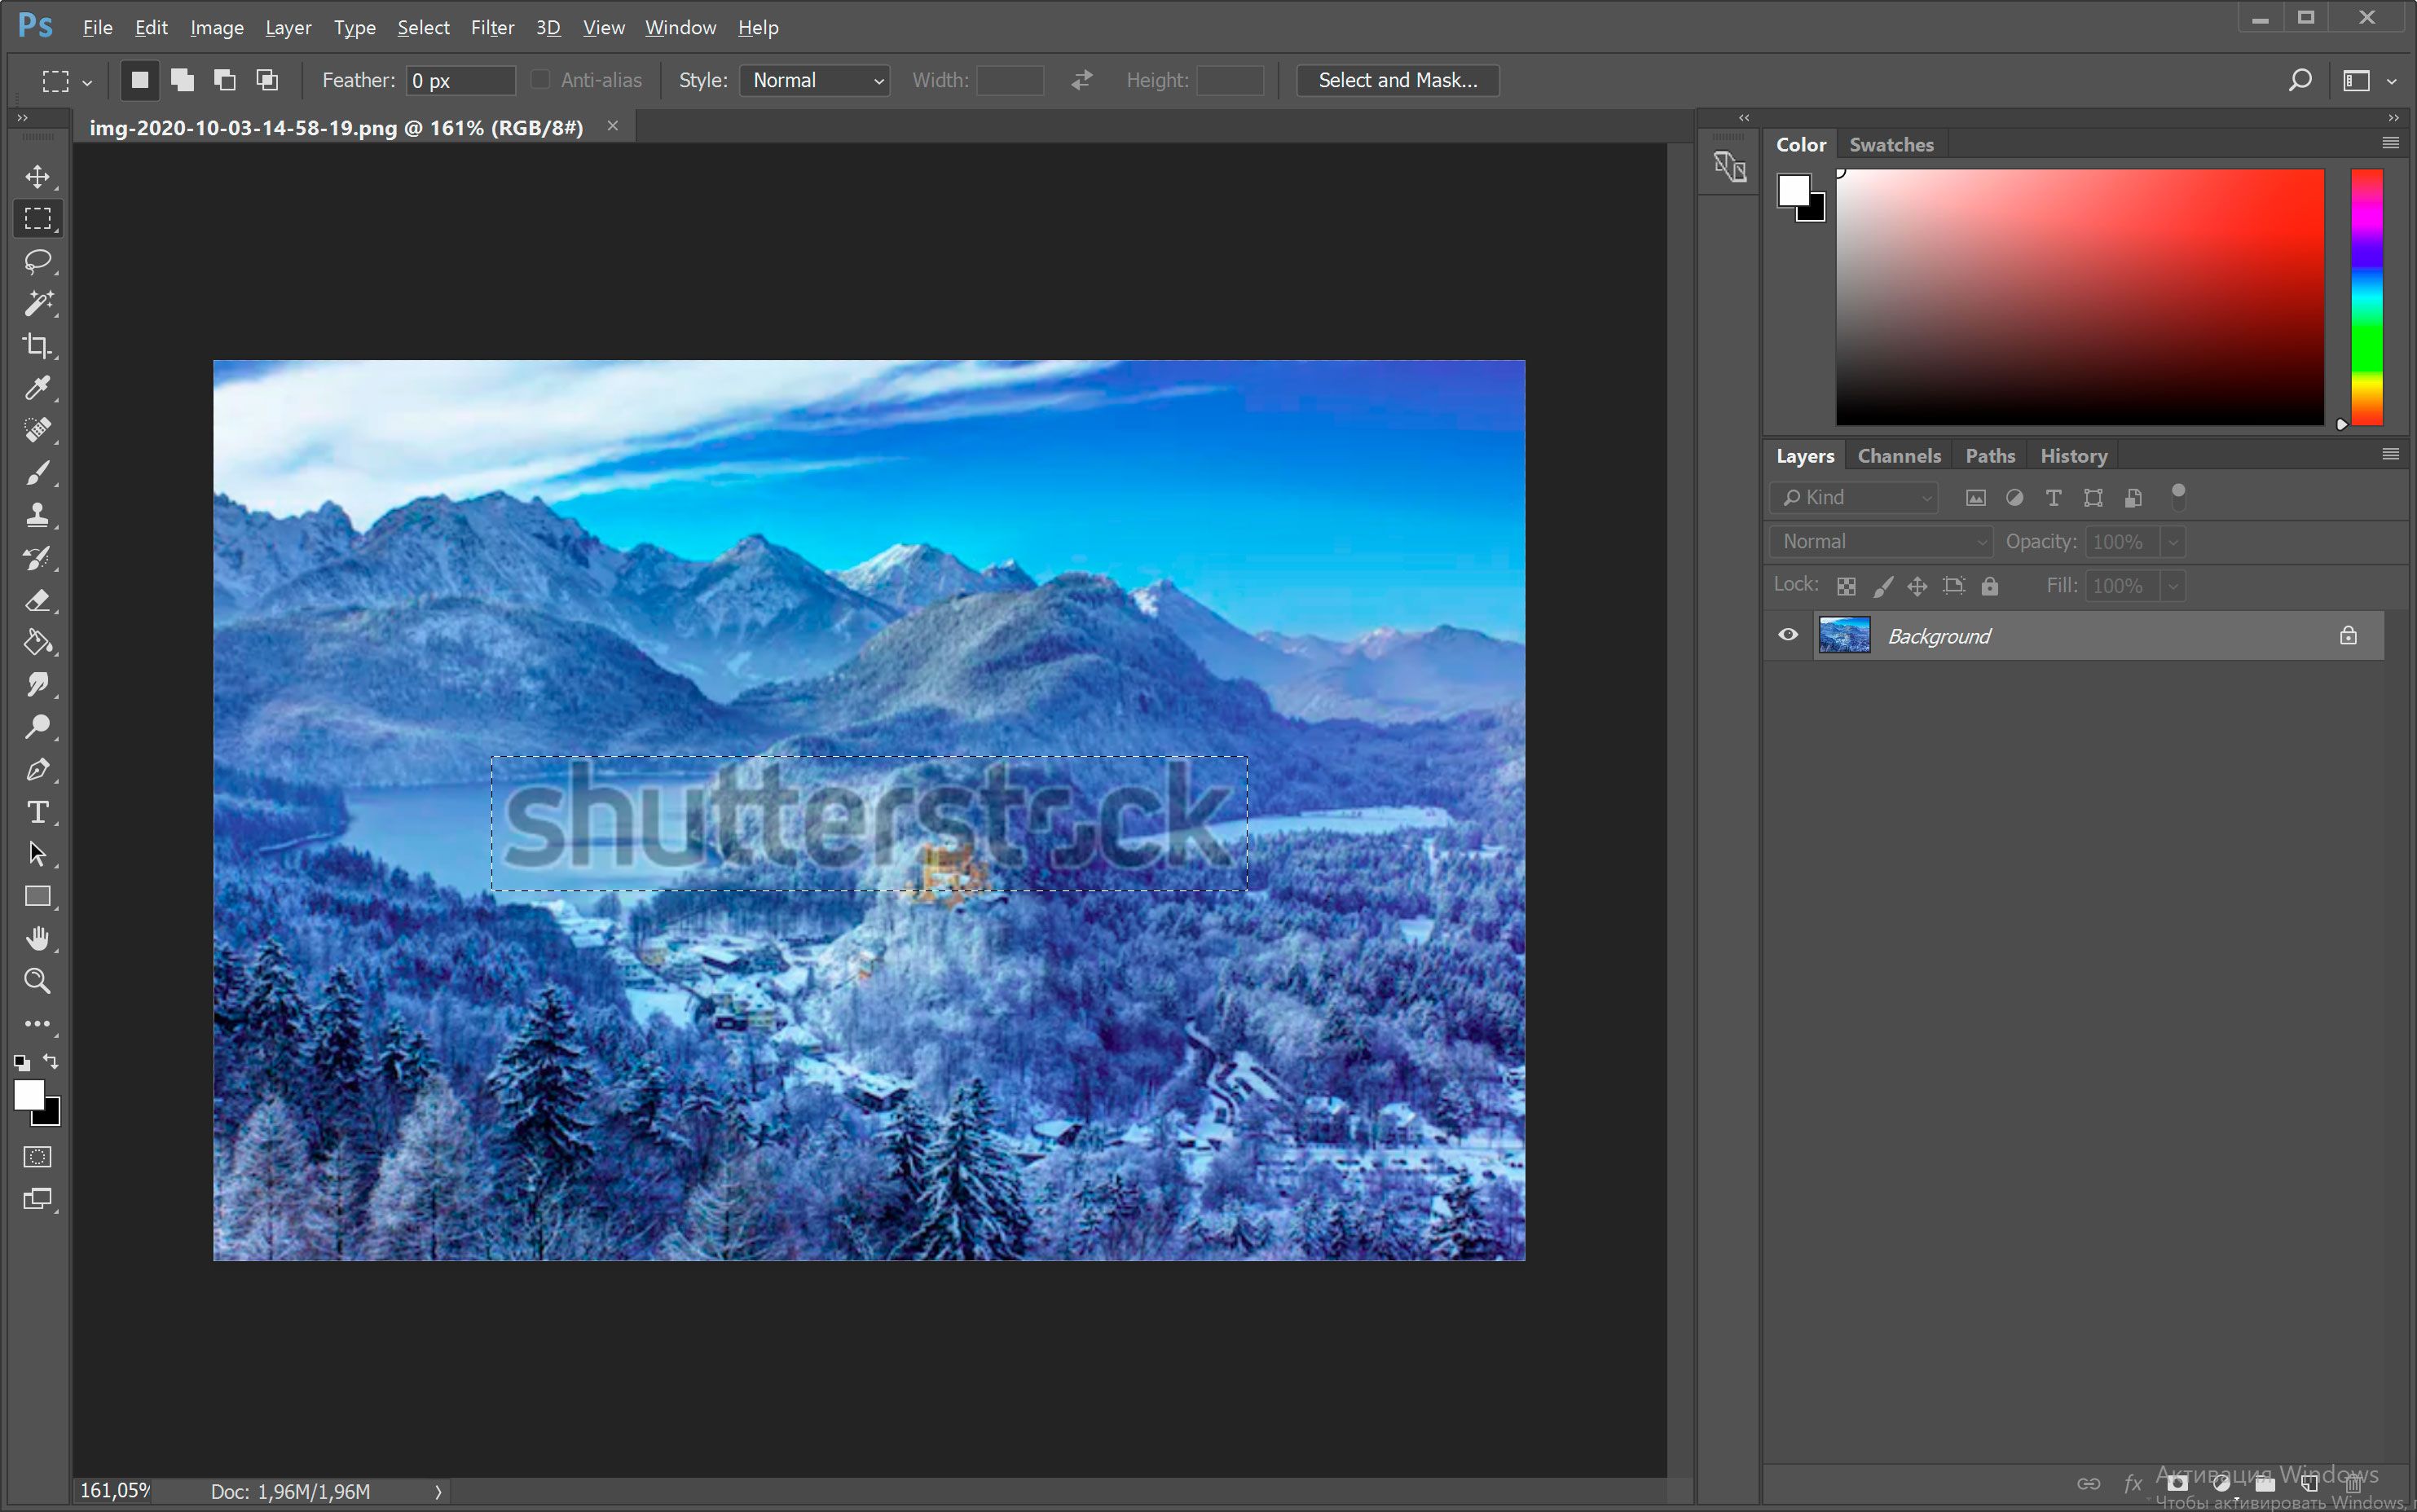 Buka gambar dengan watermark Shutterstock di Photoshop...